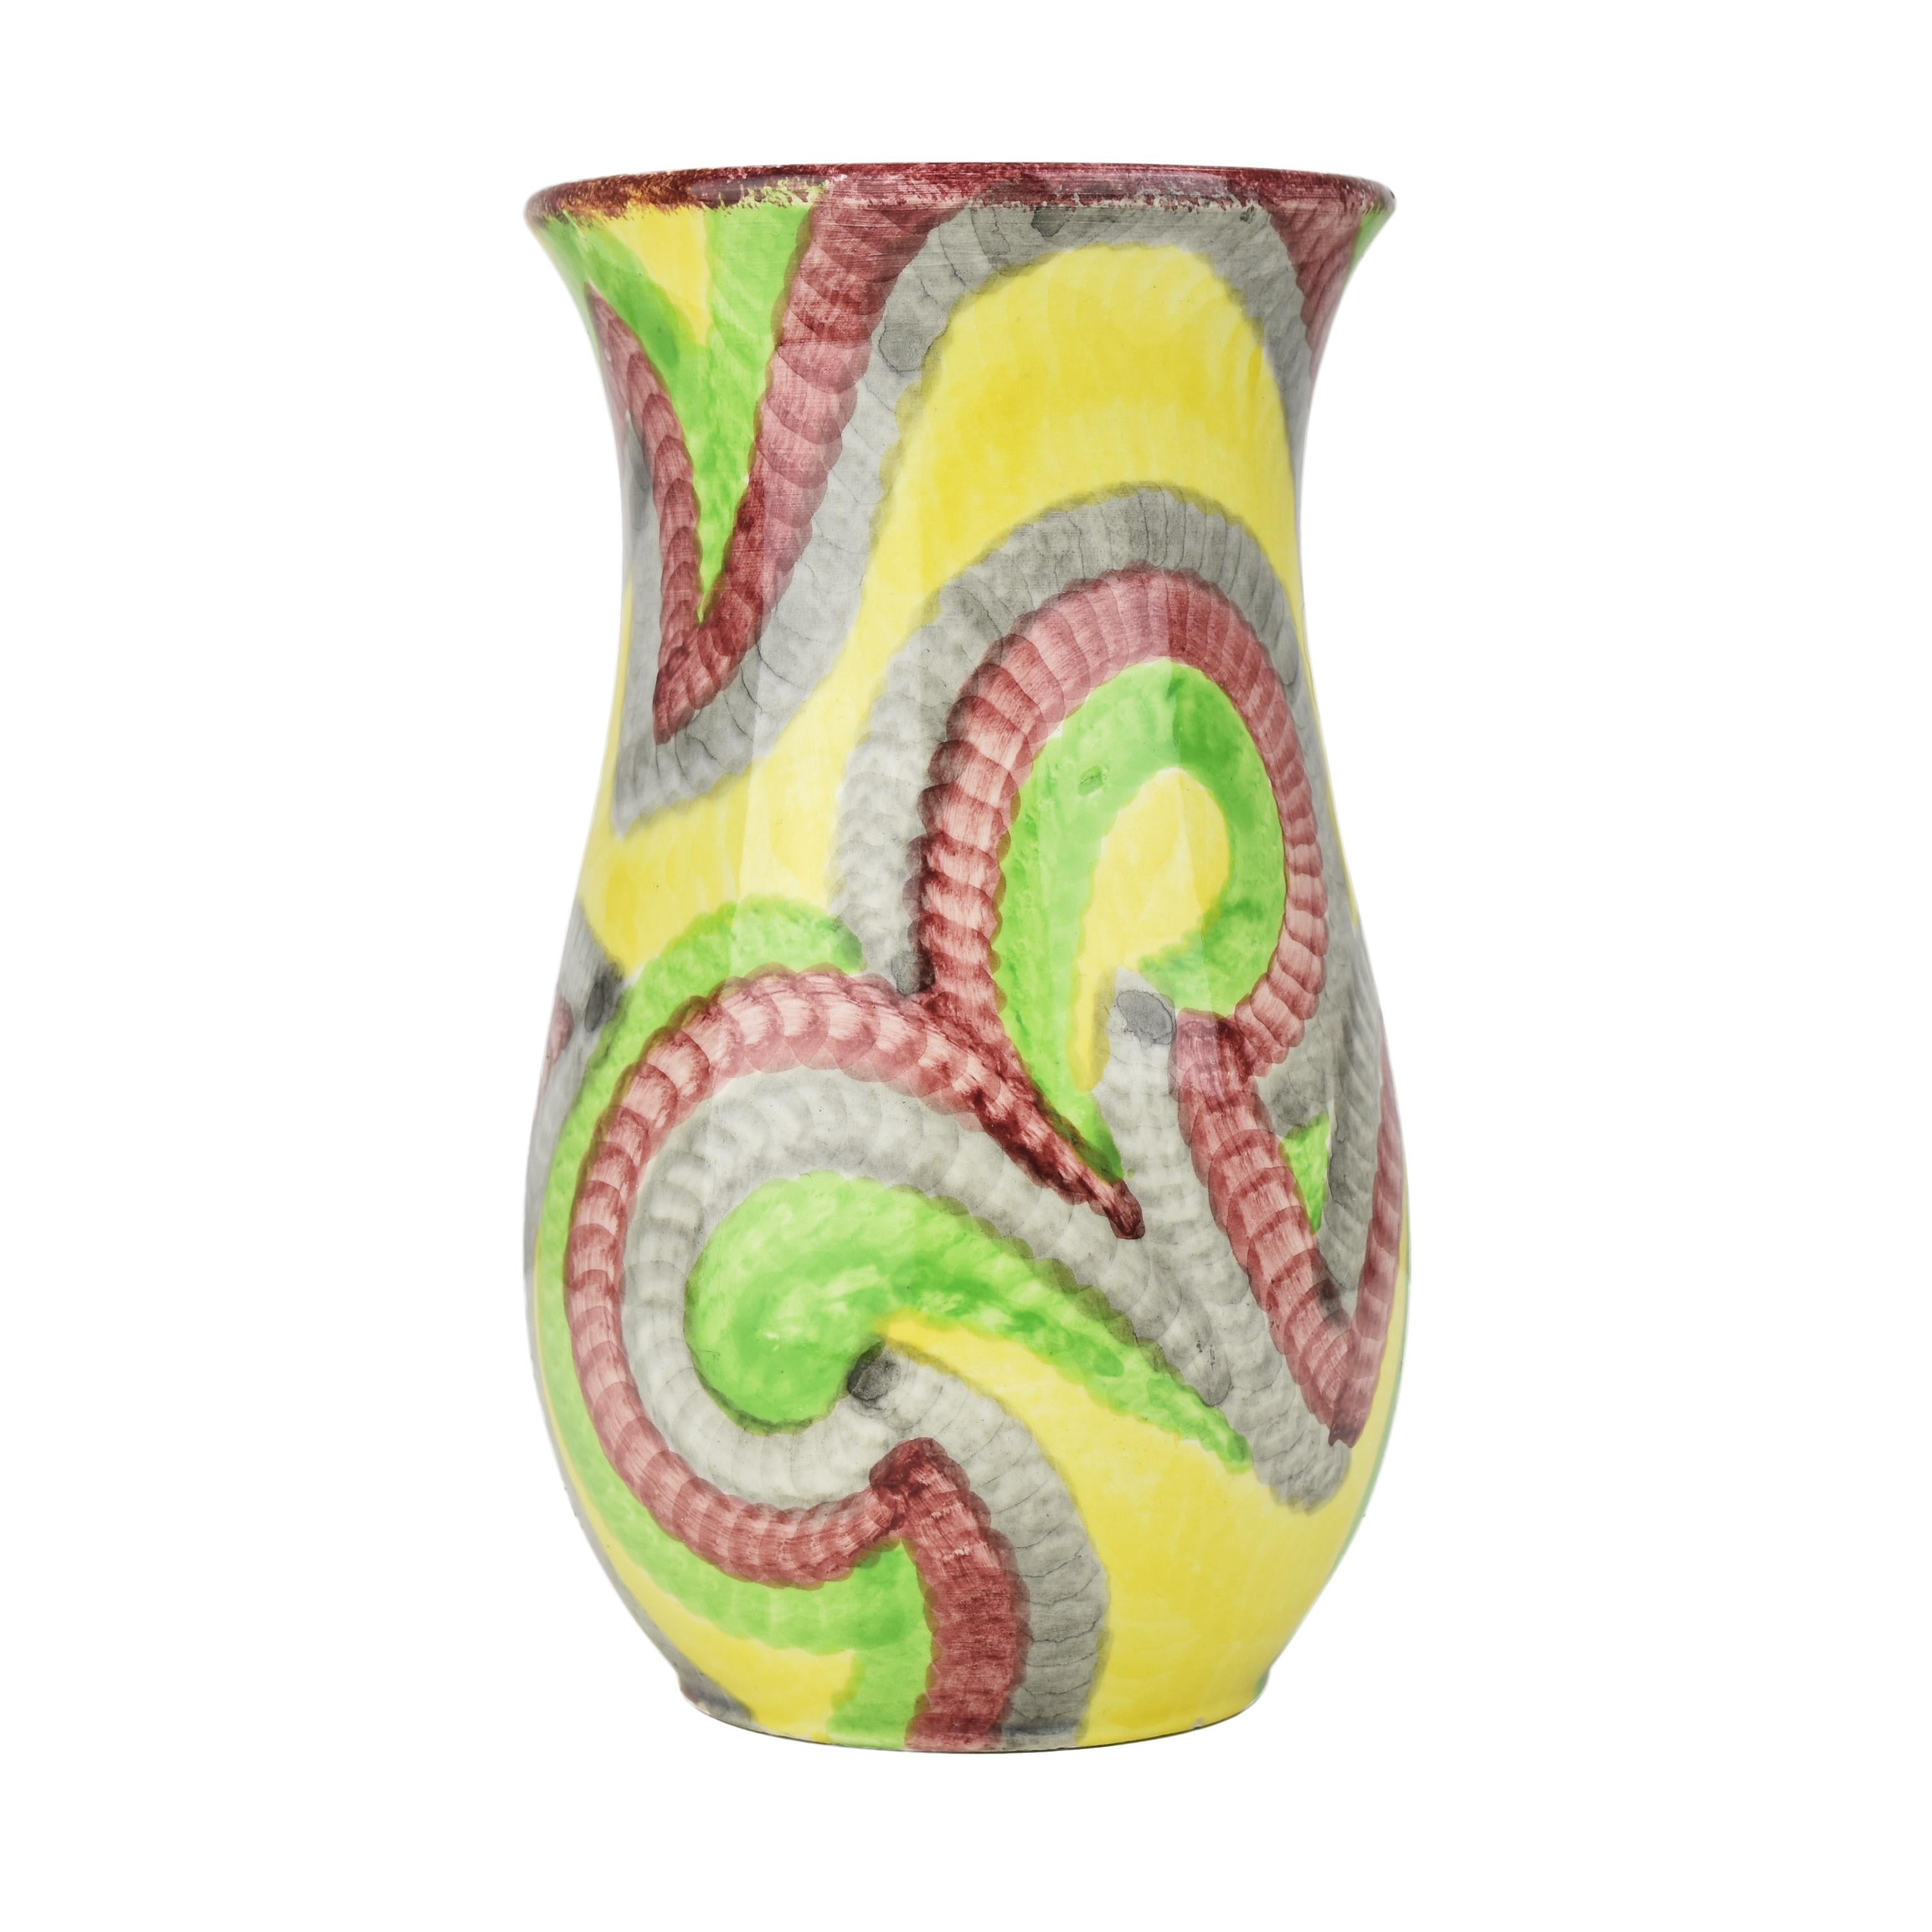 El jarrón Schramberg Eva Zeisel Gobelin Art Decó Bauhaus es una pieza de cerámica única y muy coleccionable. Este jarrón se creó a principios del siglo XX, durante el periodo Art Déco, que se caracterizó por sus atrevidas formas geométricas, colores